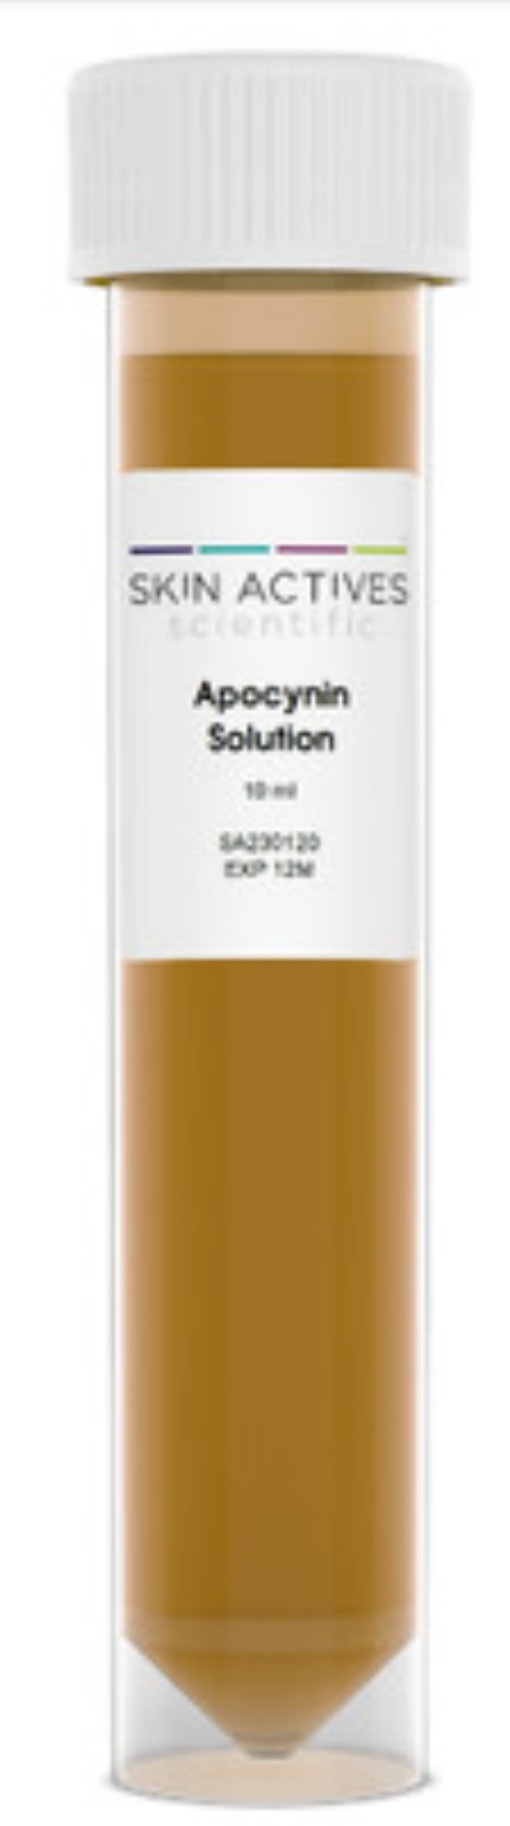 Skin Actives Scientific Apocynin Solution